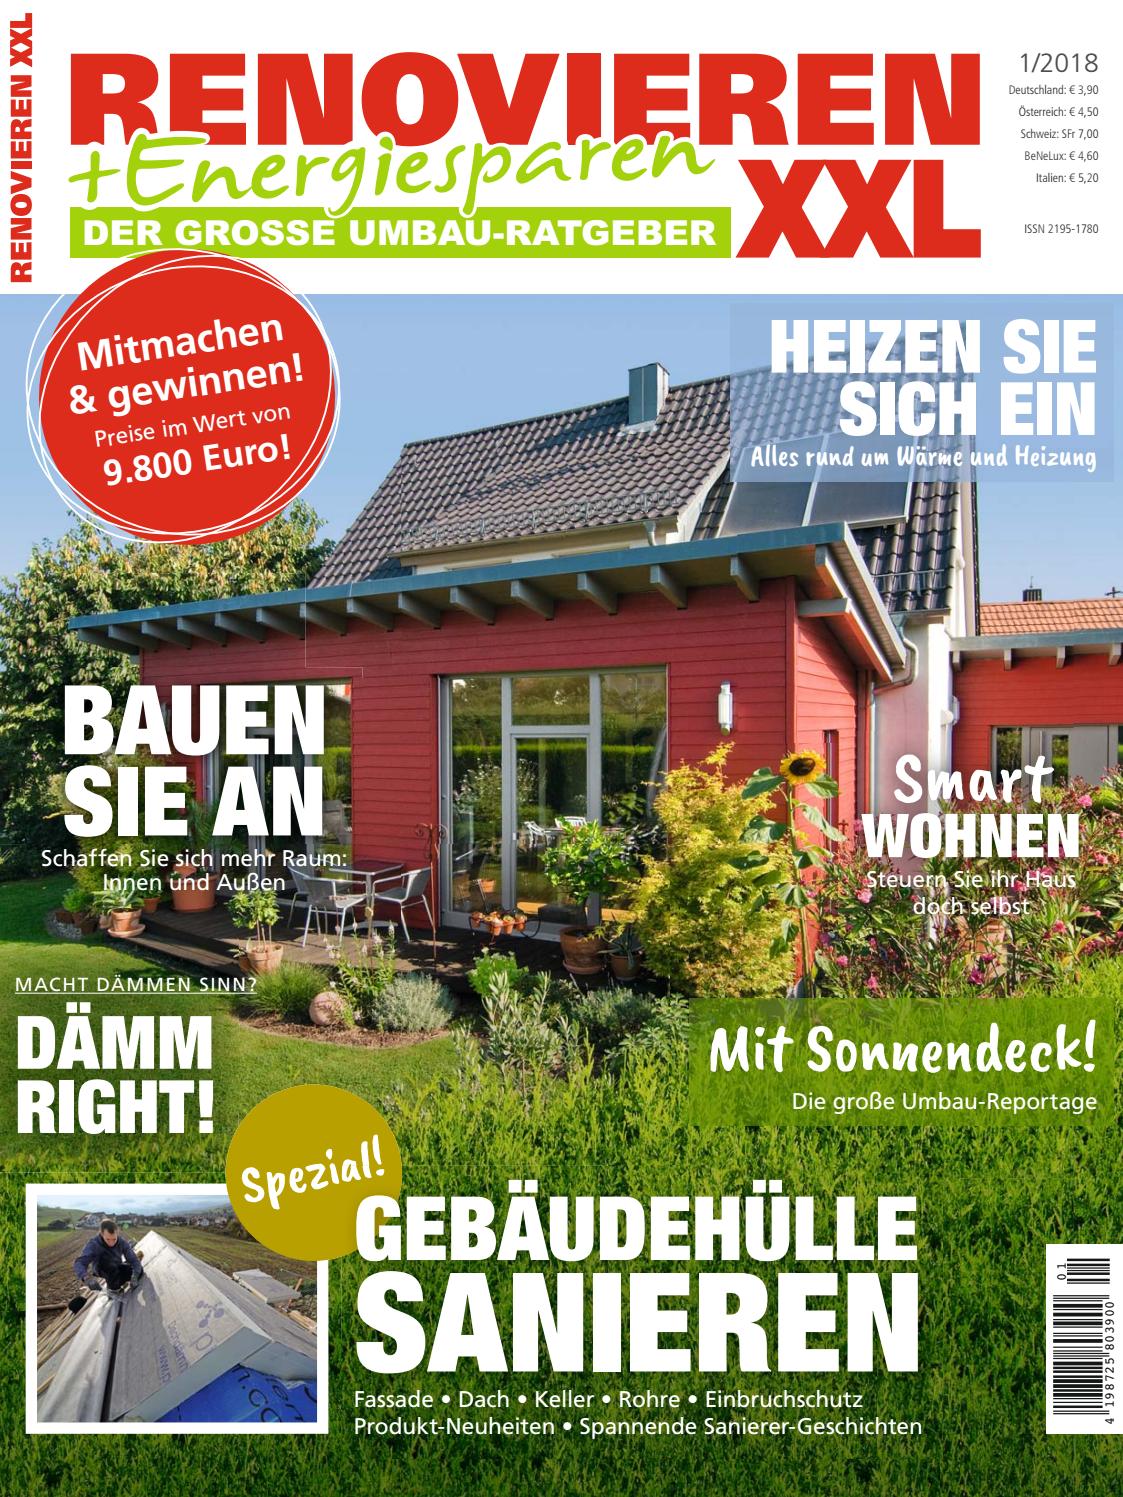 Aussen Hauswand Deko Schön Renovieren & Energiesparen 1 2018 by Family Home Verlag Gmbh